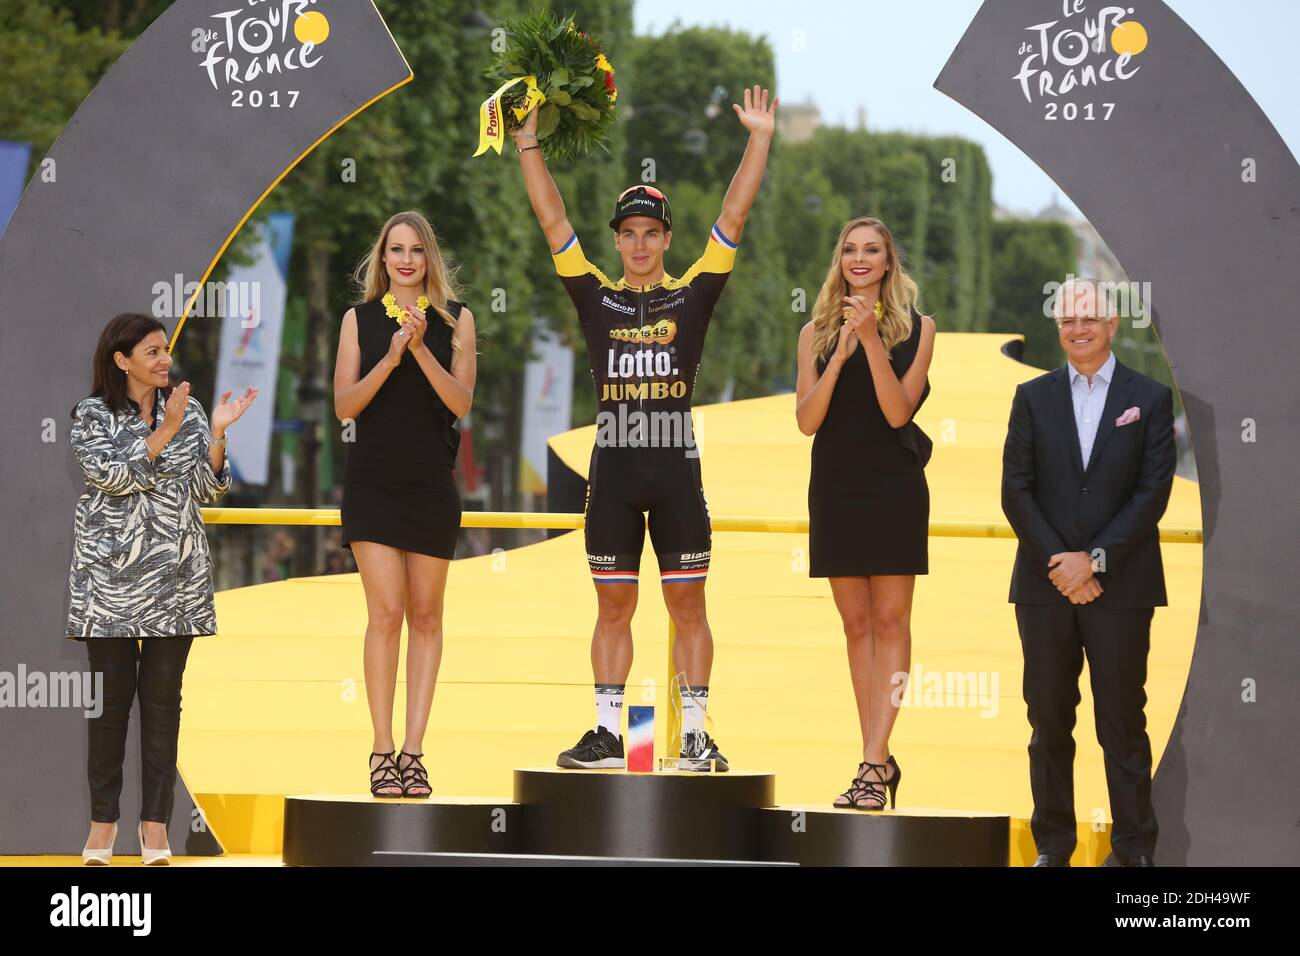 Dylan Groenewegen - il Team Lotto Jumbo attraversa la fila per vincere la tappa 21 del Tour de France 2017 a Parigi, Francia, 23 luglio 2016. Foto di Jerome Domine/ABACAPRESS.COM Foto Stock